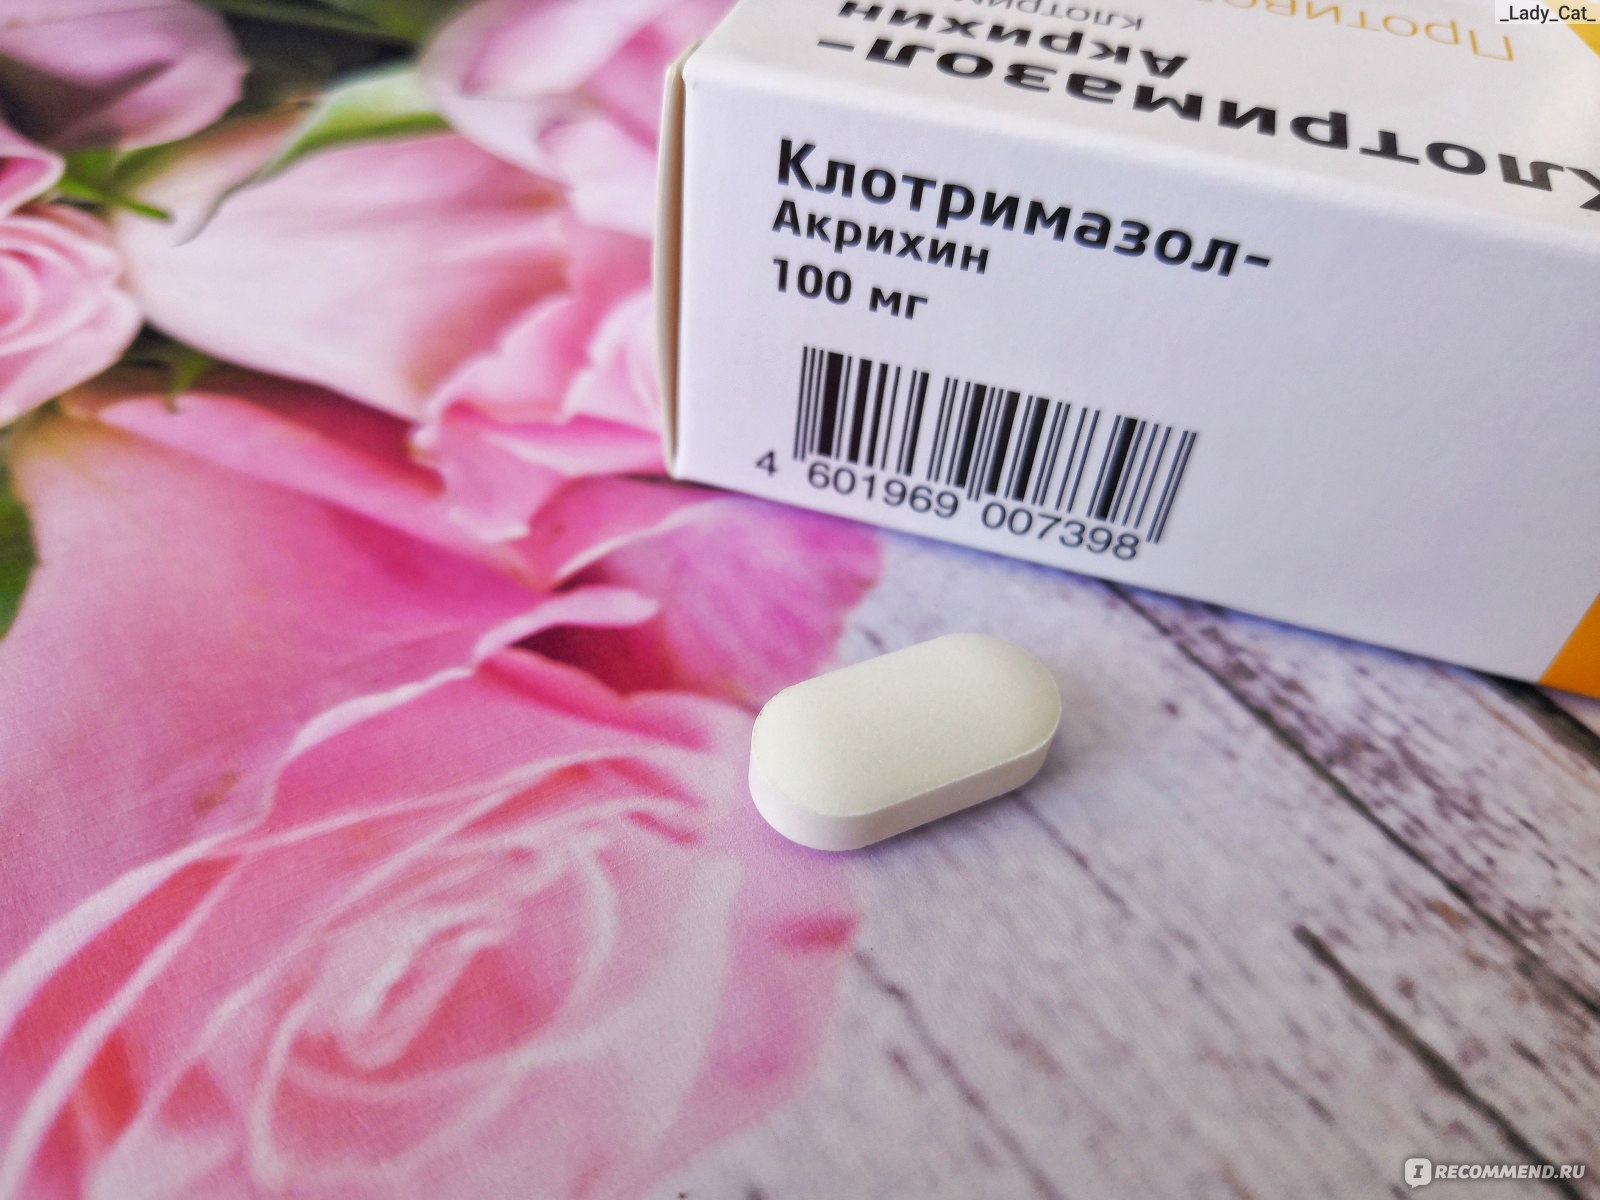 Противогрибковое средство Акрихин Клотримазол-Акри (табл. ва 100 мг .